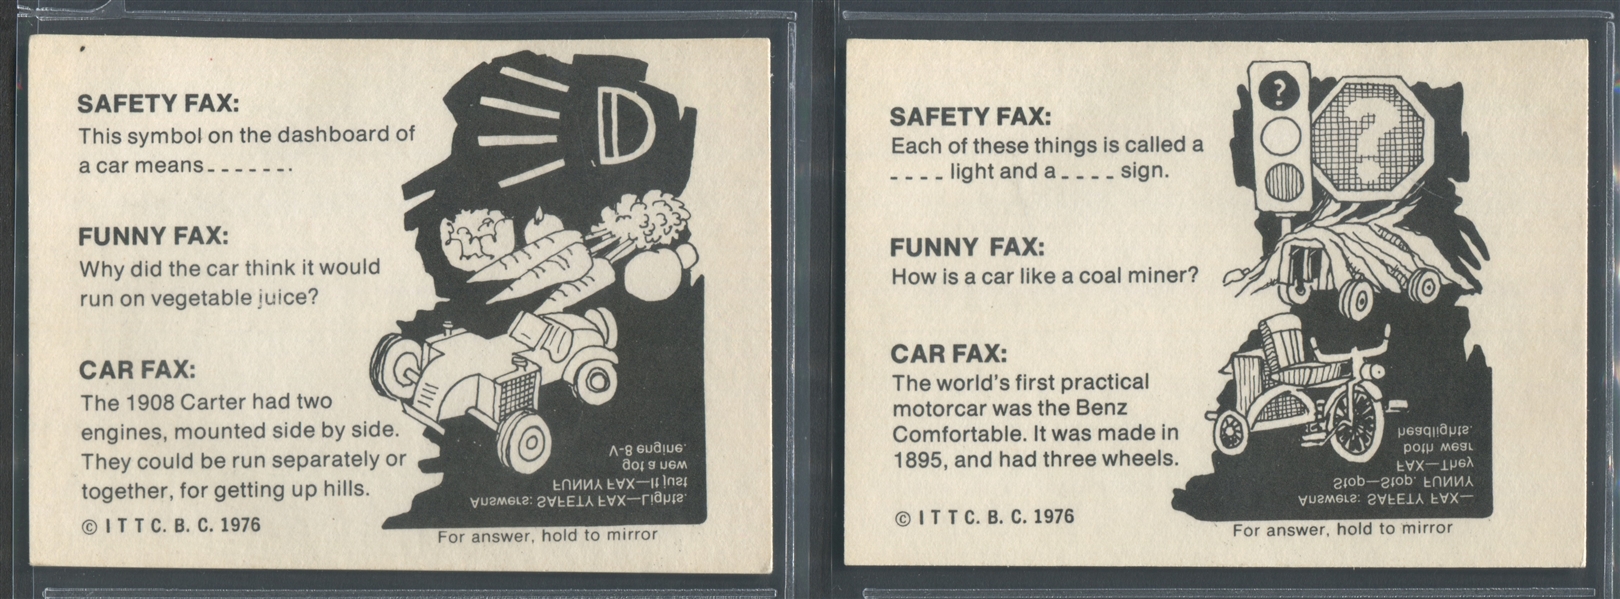 1976 Wonder Bread Crazy Cars Complete Set of (20) Cards